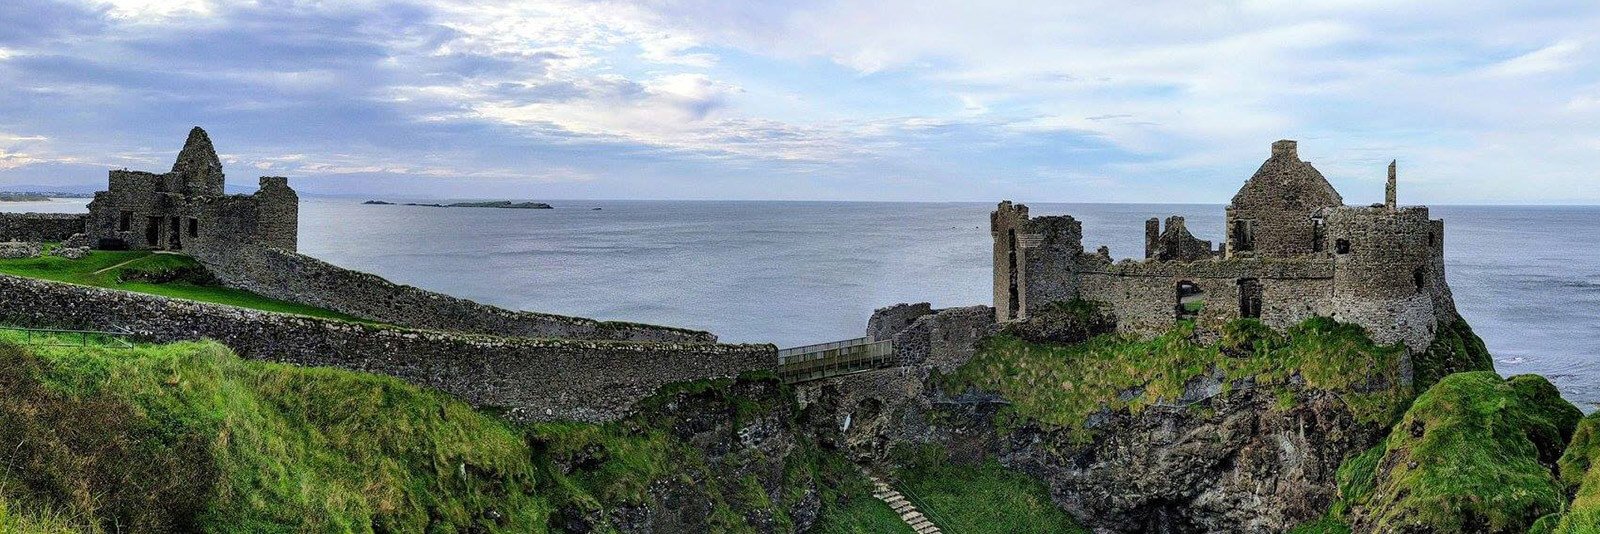 Dunluce Castle ruins on the Antrim coast